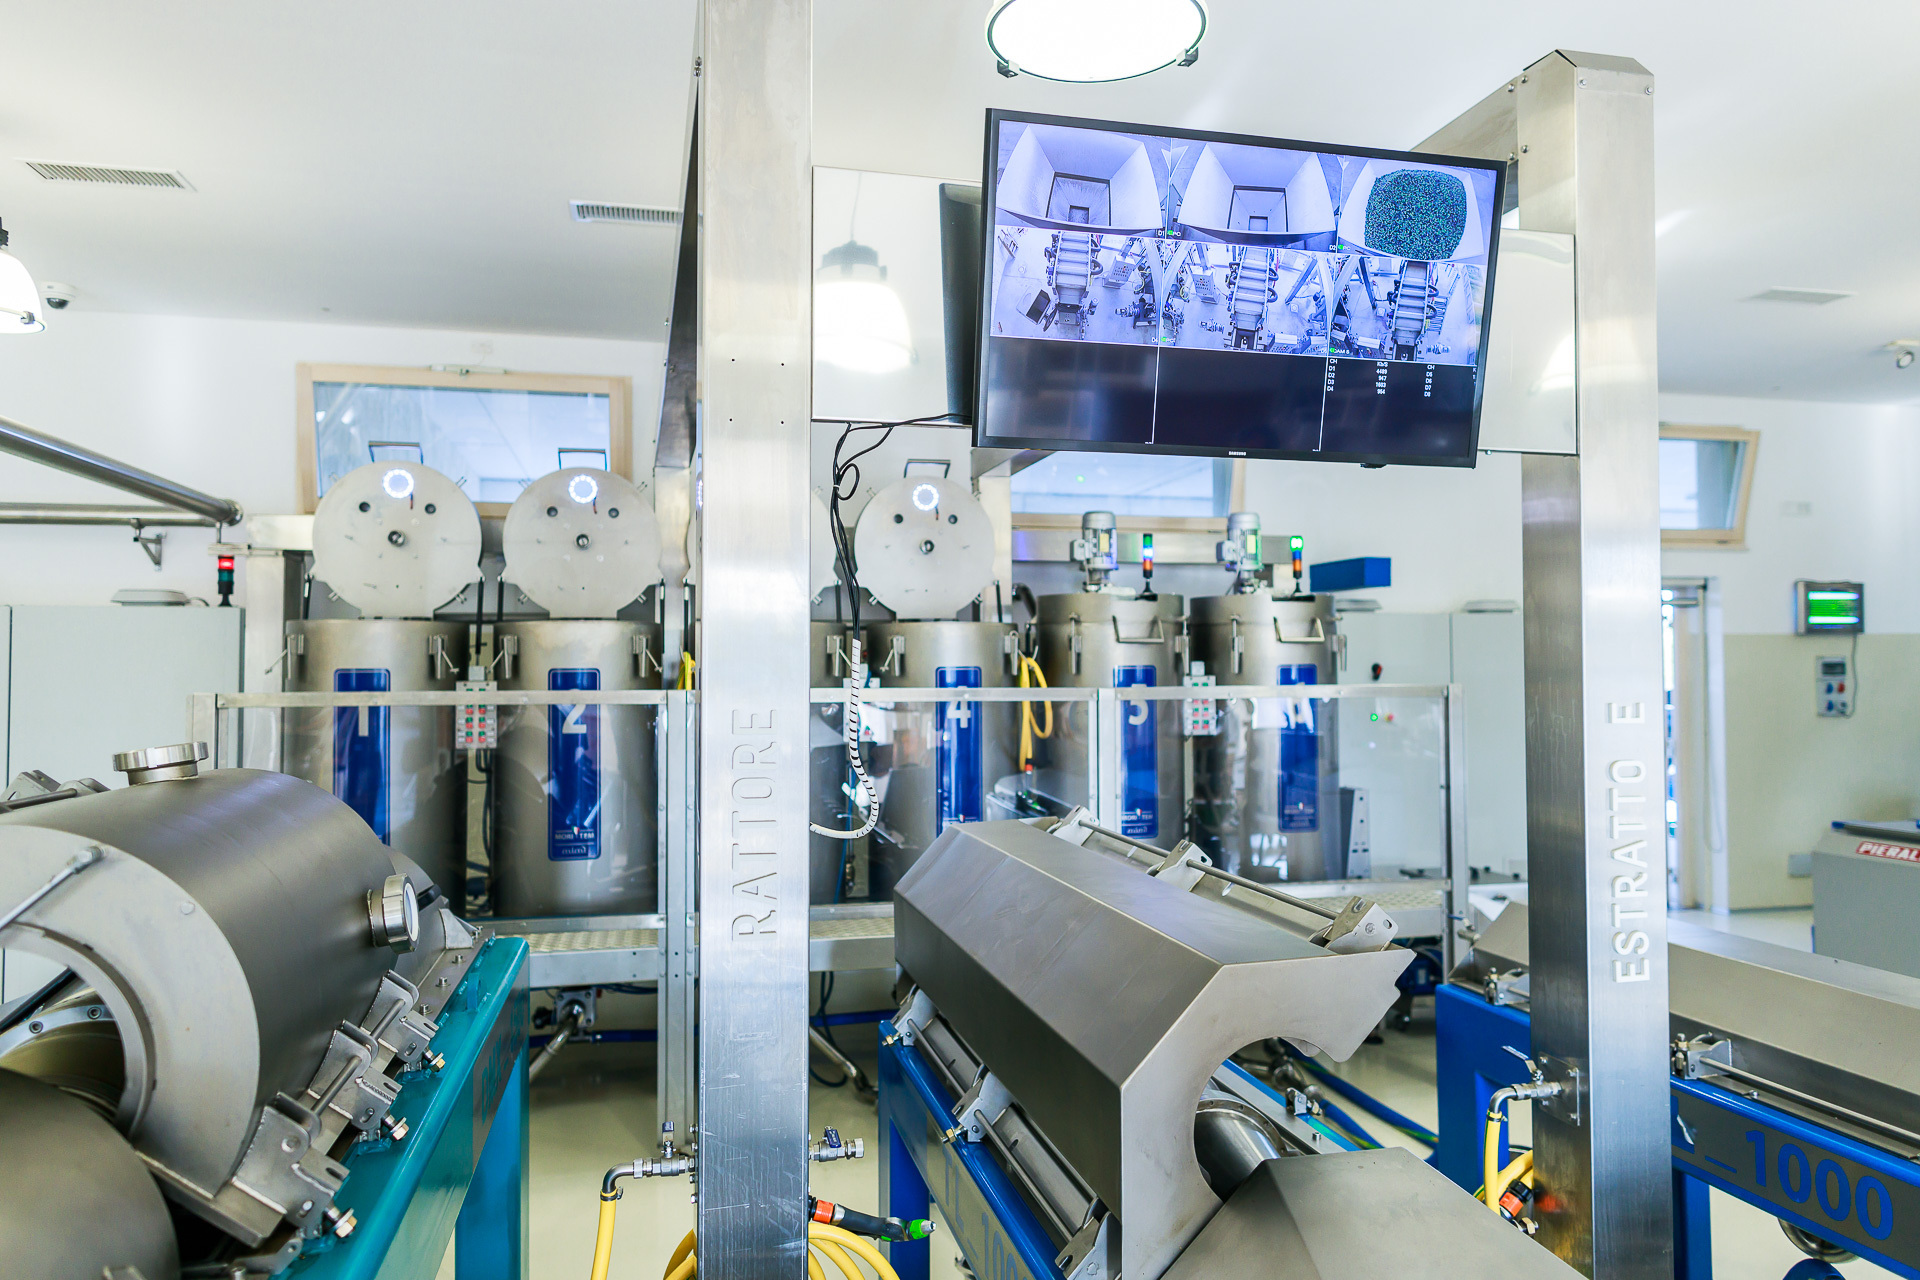 衛生管理が徹底されたイタリア製の搾油機でオイルを抽出します。最新の搾油技術と厳格に温度と時間を管理する事で高品質のエクストラバージンオリーヴオイルを生産する事が可能となります。